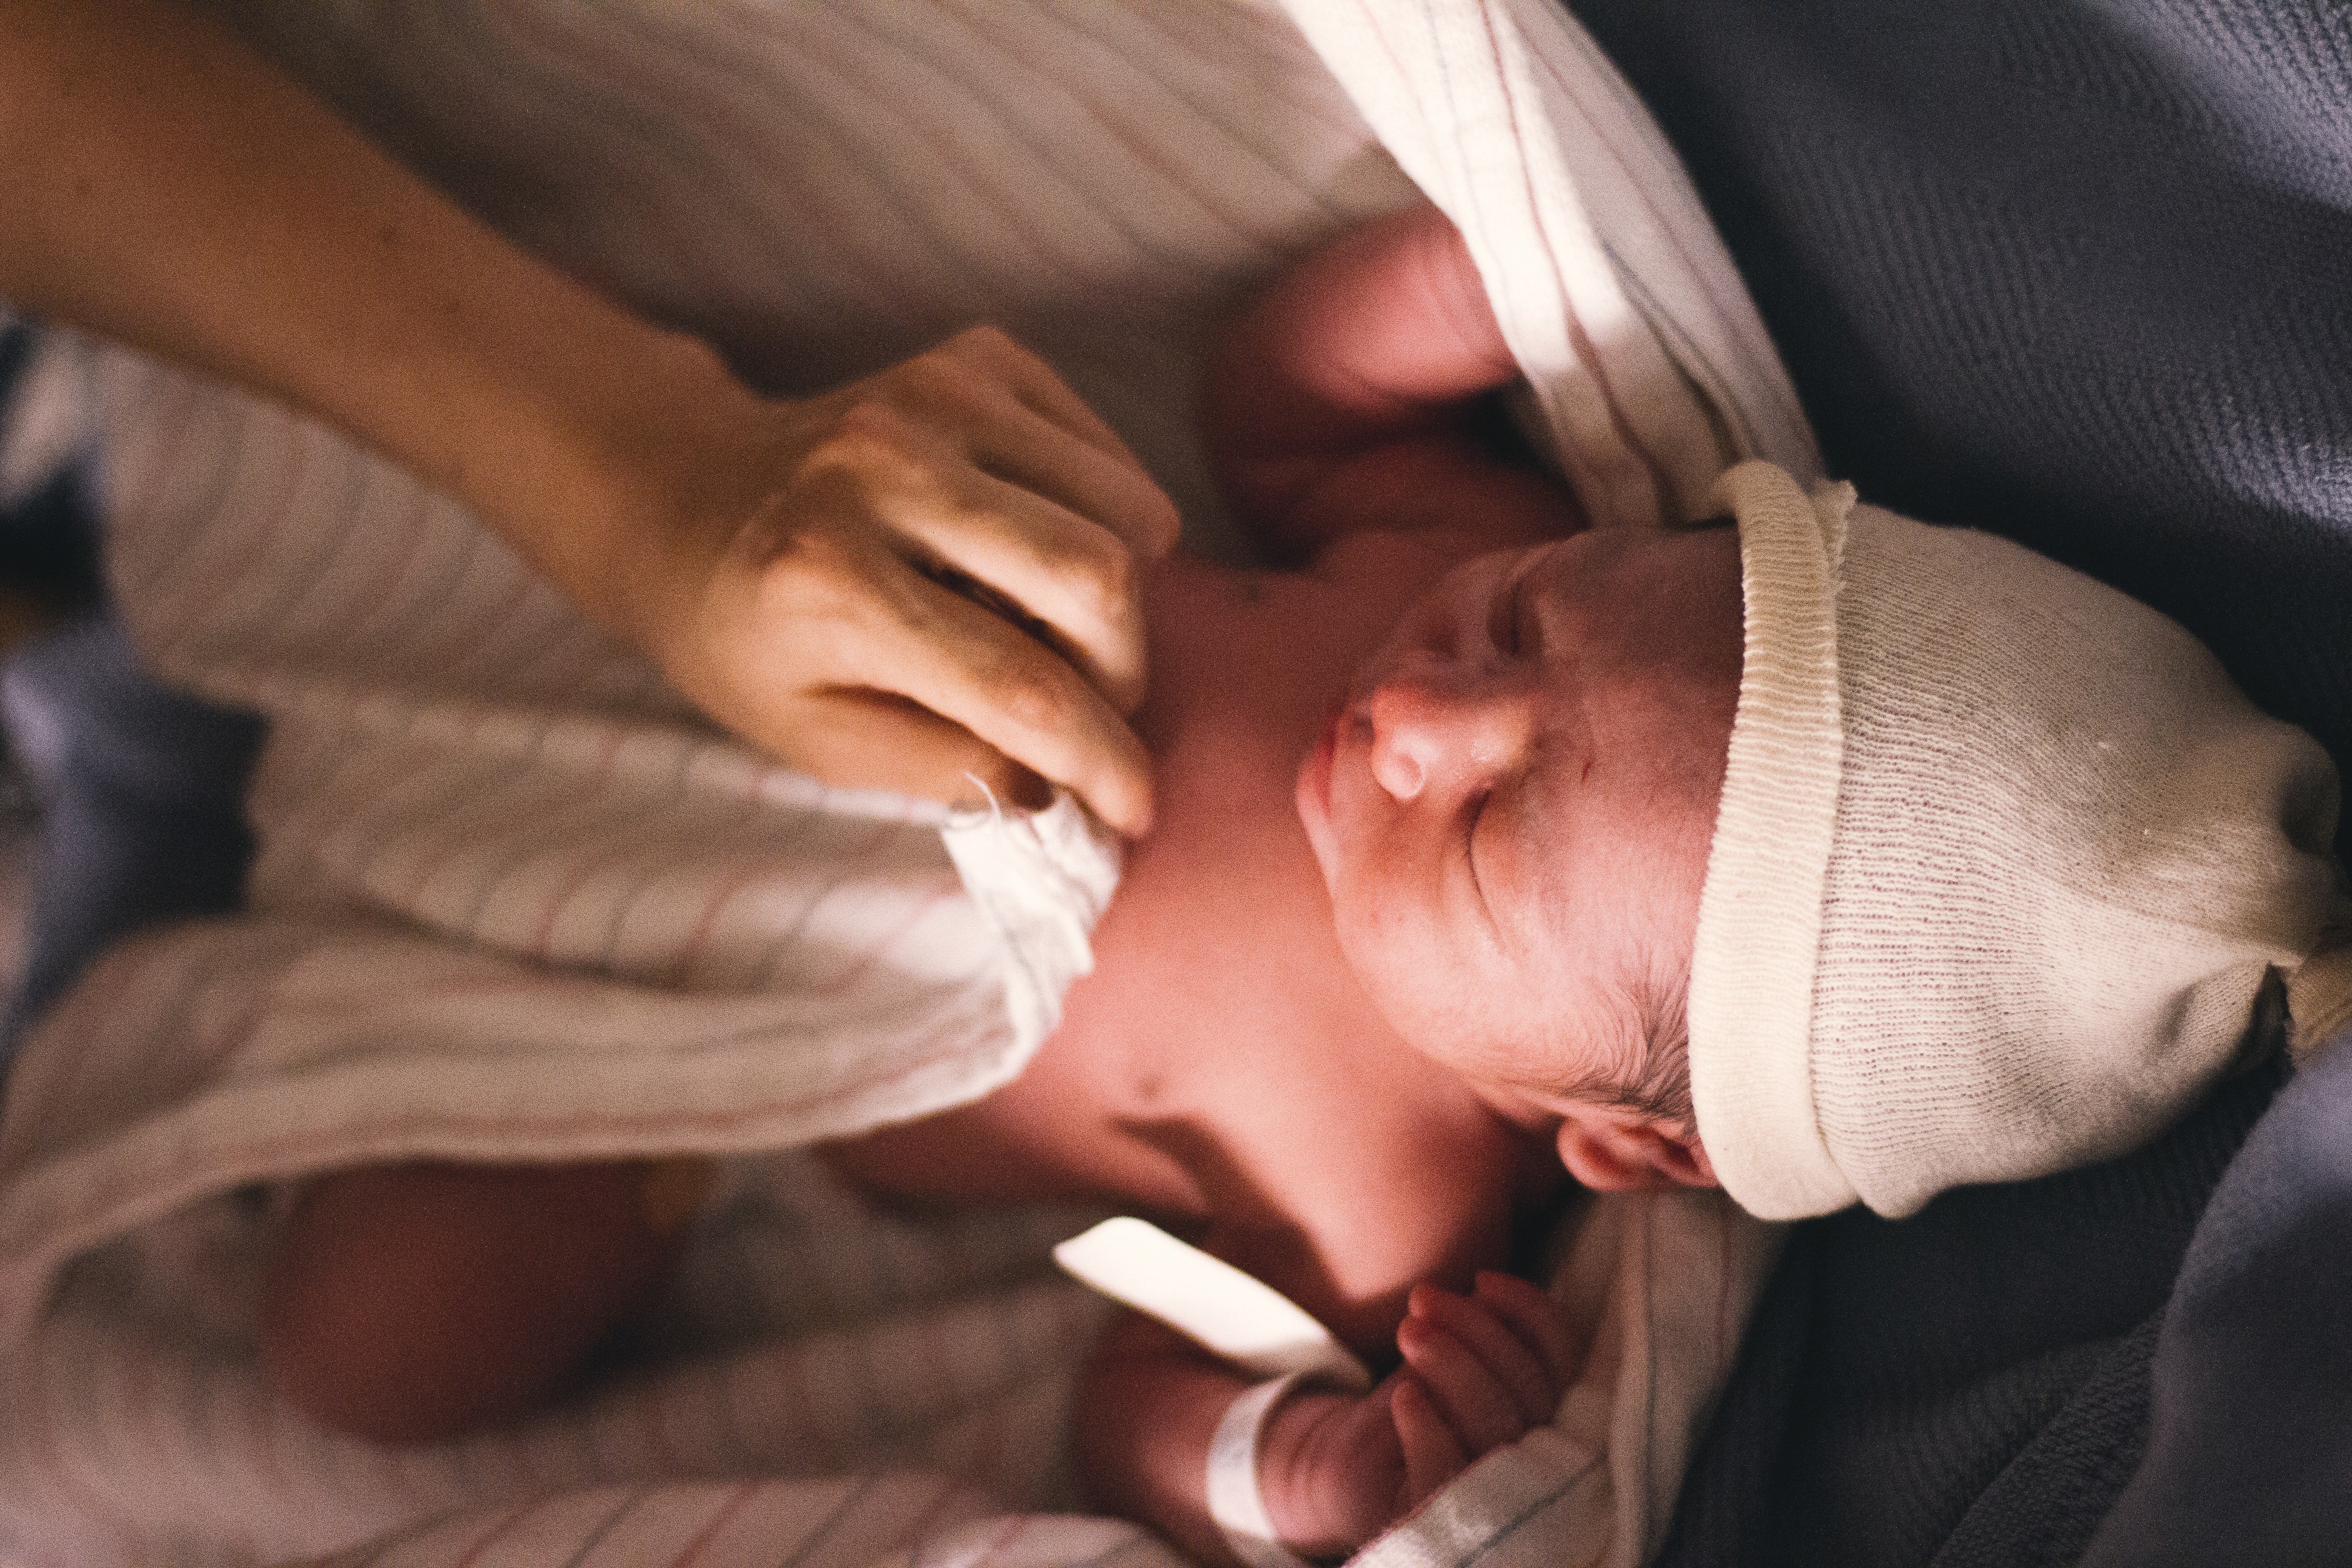 Bebé recién nacido siendo envuelto. | Fuente: Isaac Taylor / Pexels